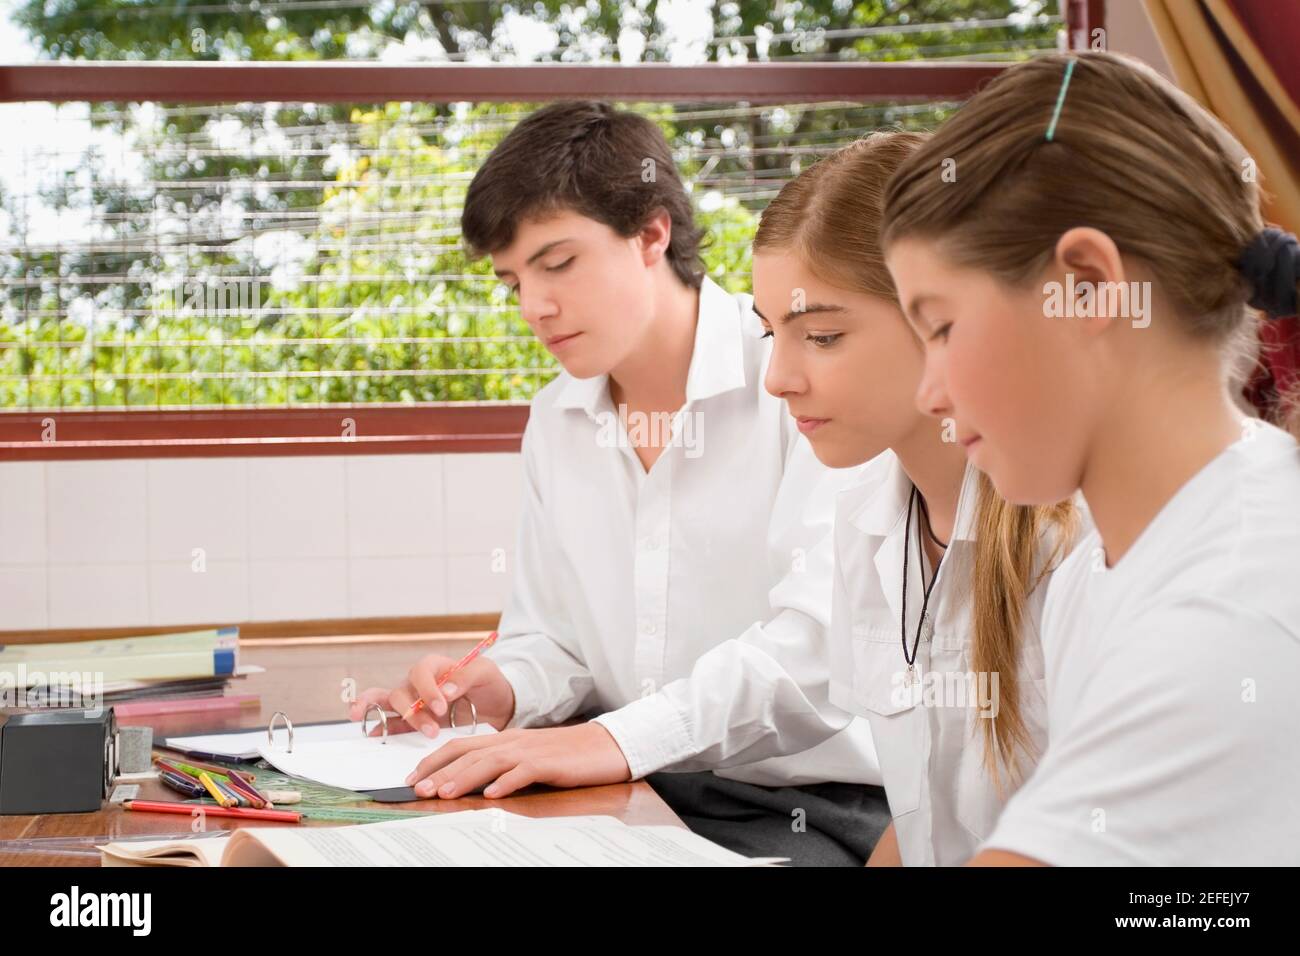 Zwei Schülerinnen und ein Schuljunge, der in einem Klassenzimmer studiert Stockfoto